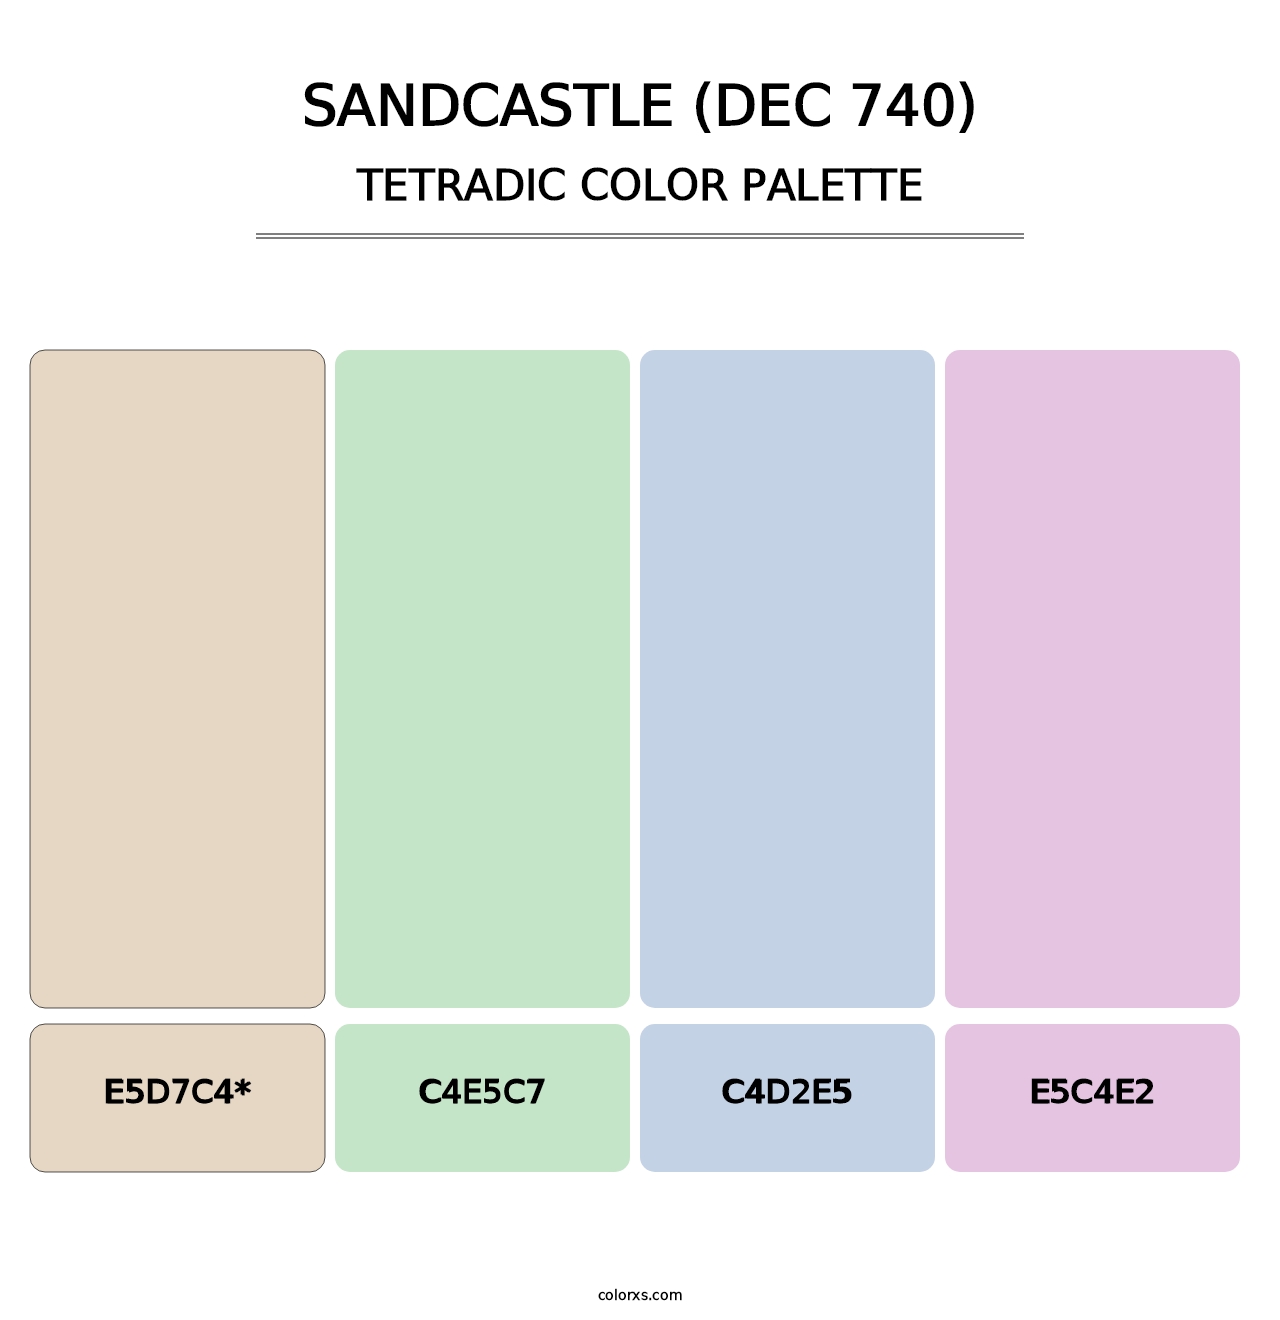 Sandcastle (DEC 740) - Tetradic Color Palette